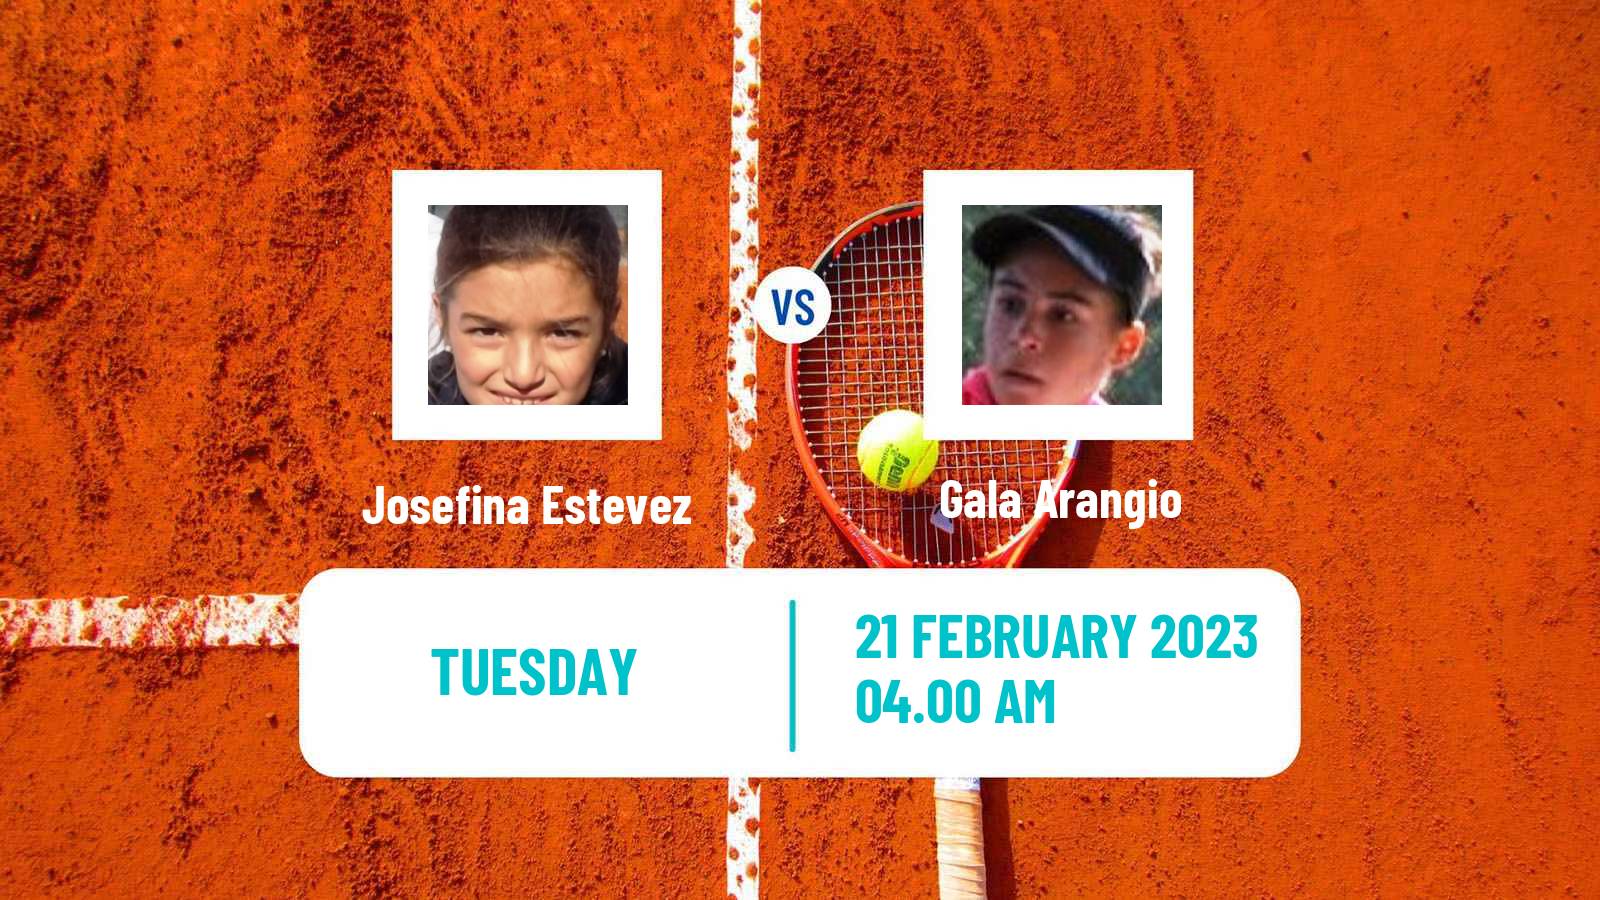 Tennis ITF Tournaments Josefina Estevez - Gala Arangio